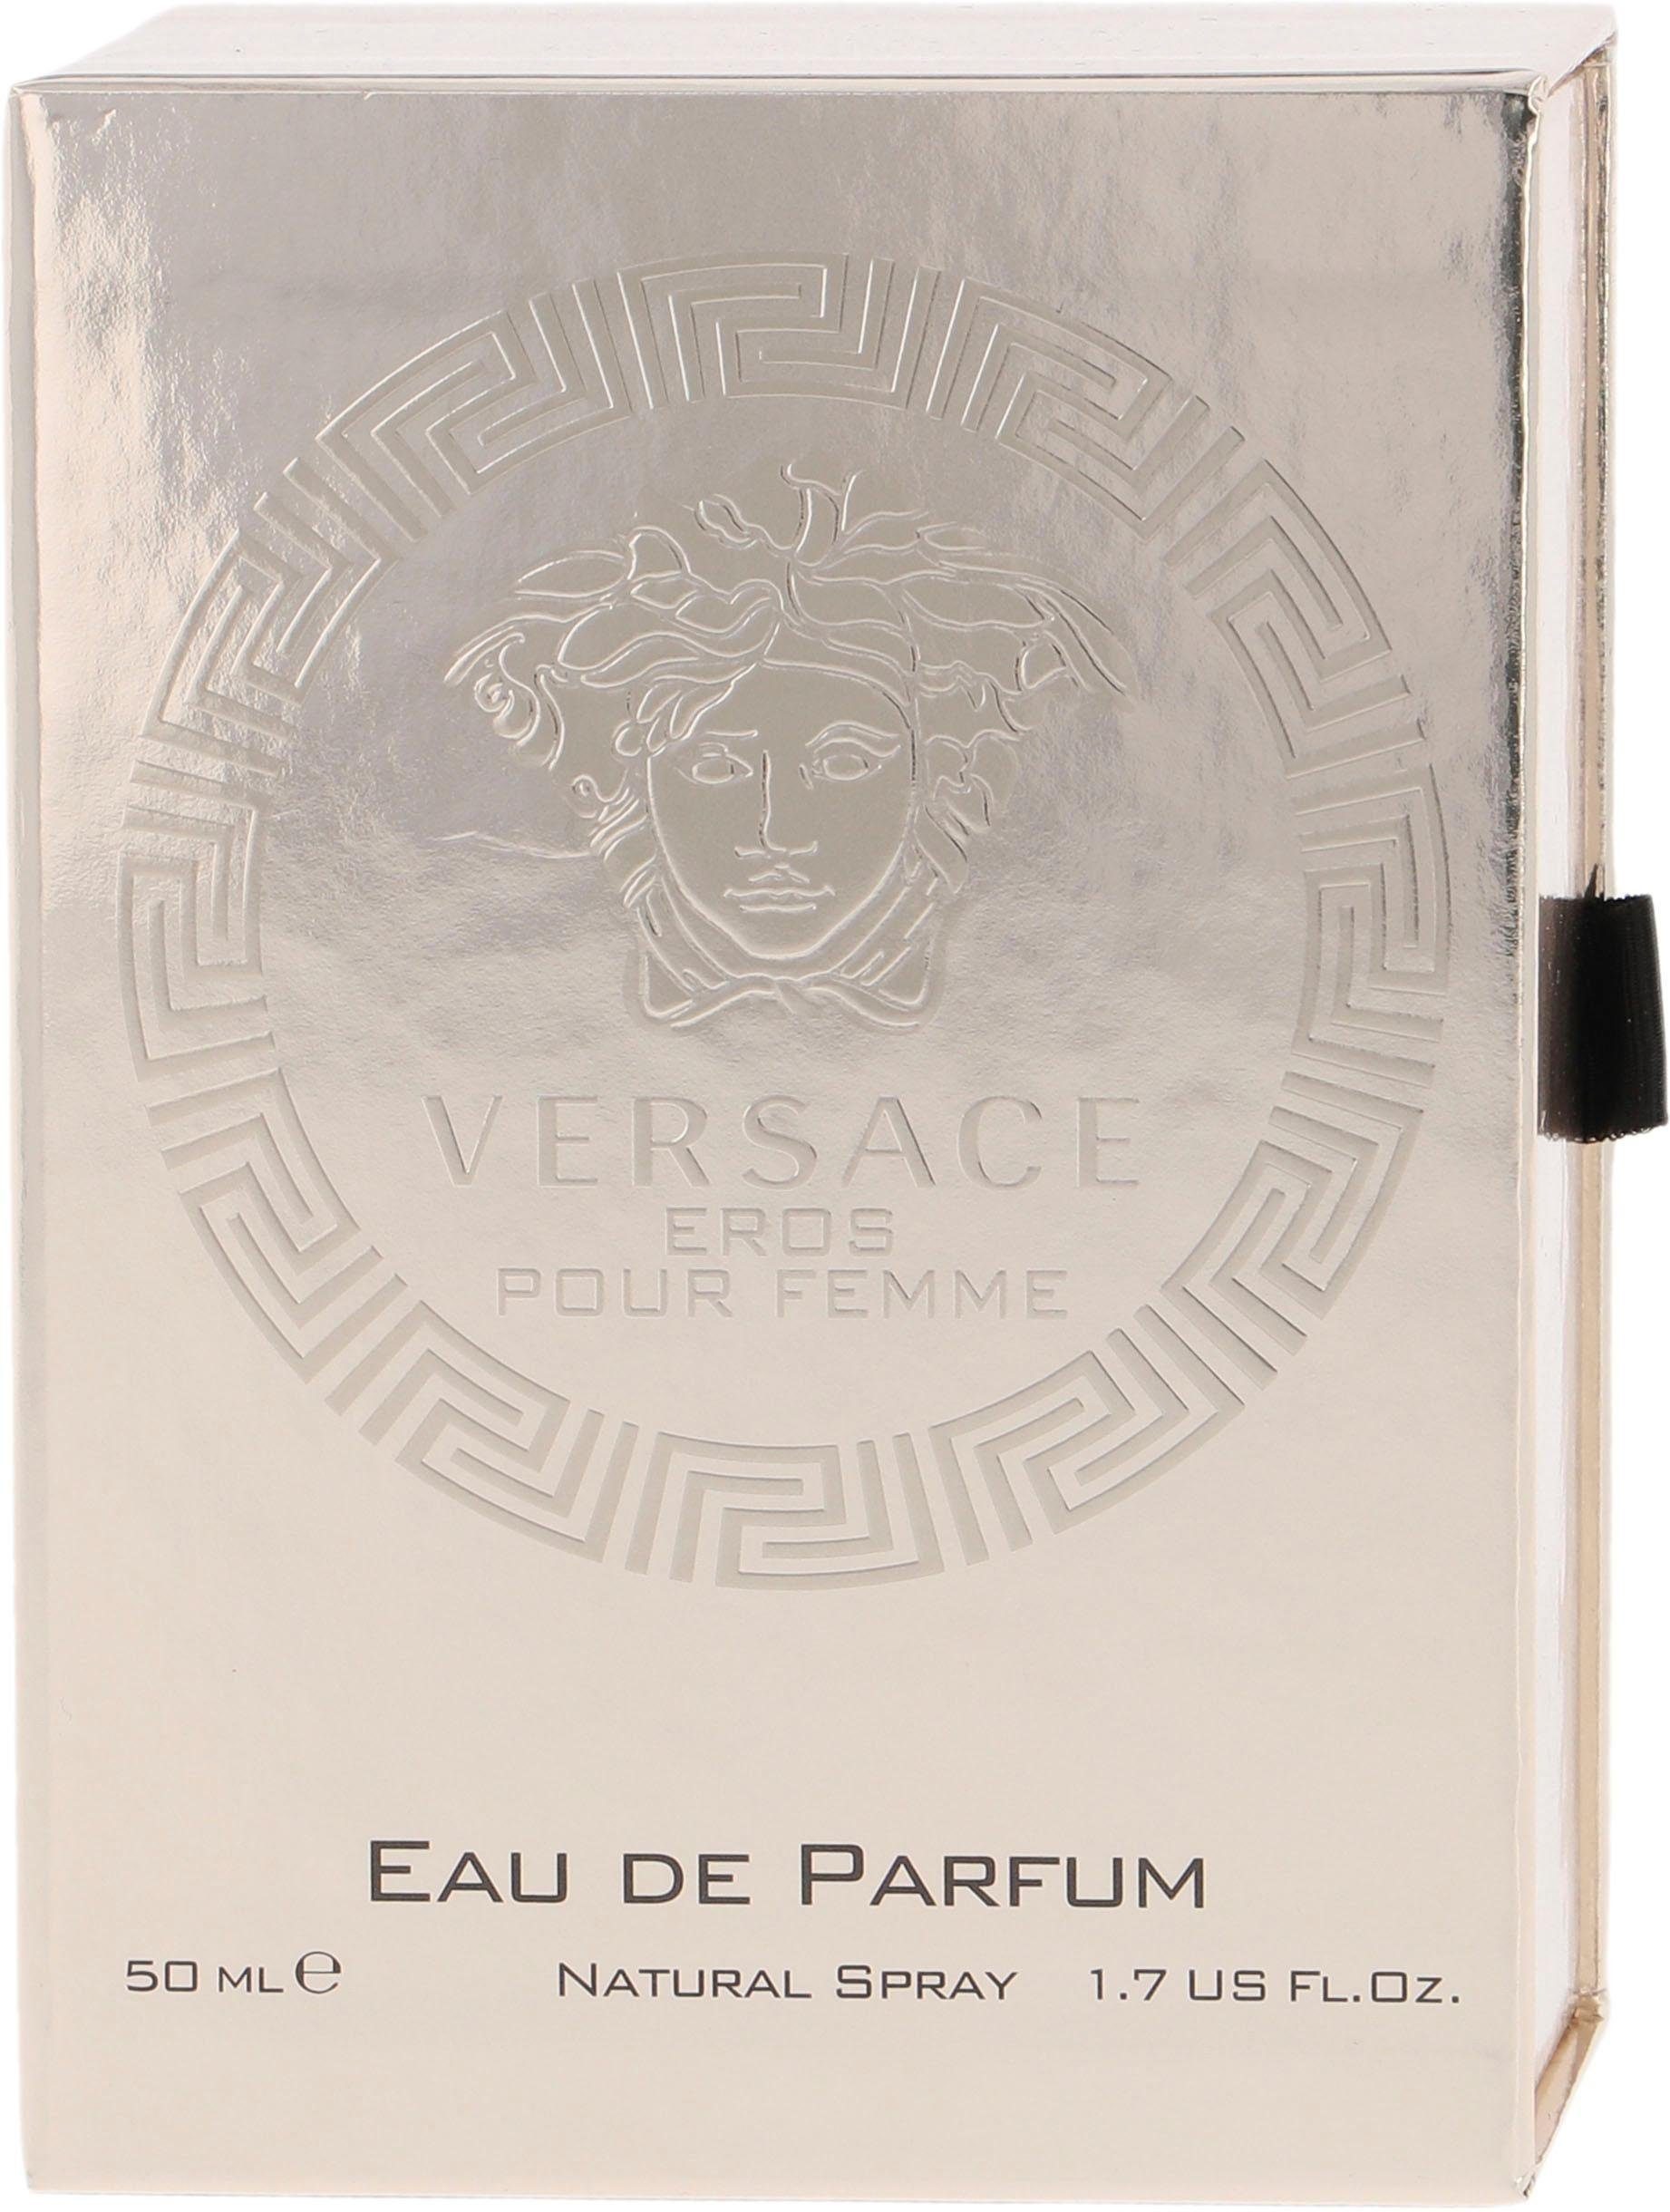 Versace Eau de Parfum Eros Femme pour